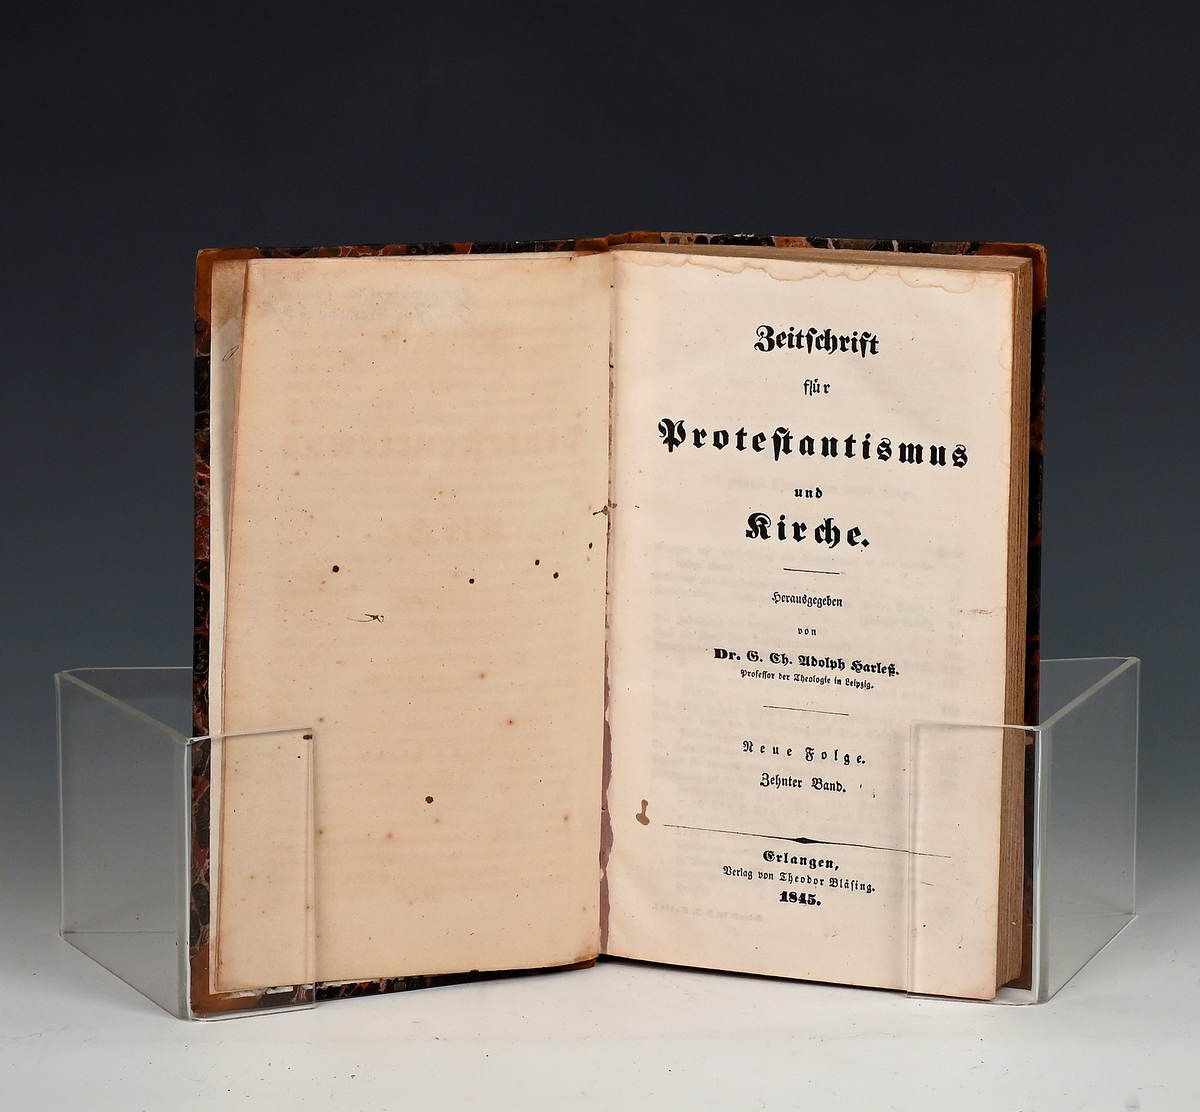 Zeitschrifte für Protestantismus und Kirche. Hgg. v. G. Ch. Joolsph Harles (o.fl.)
X, Neue Folge E. 1845